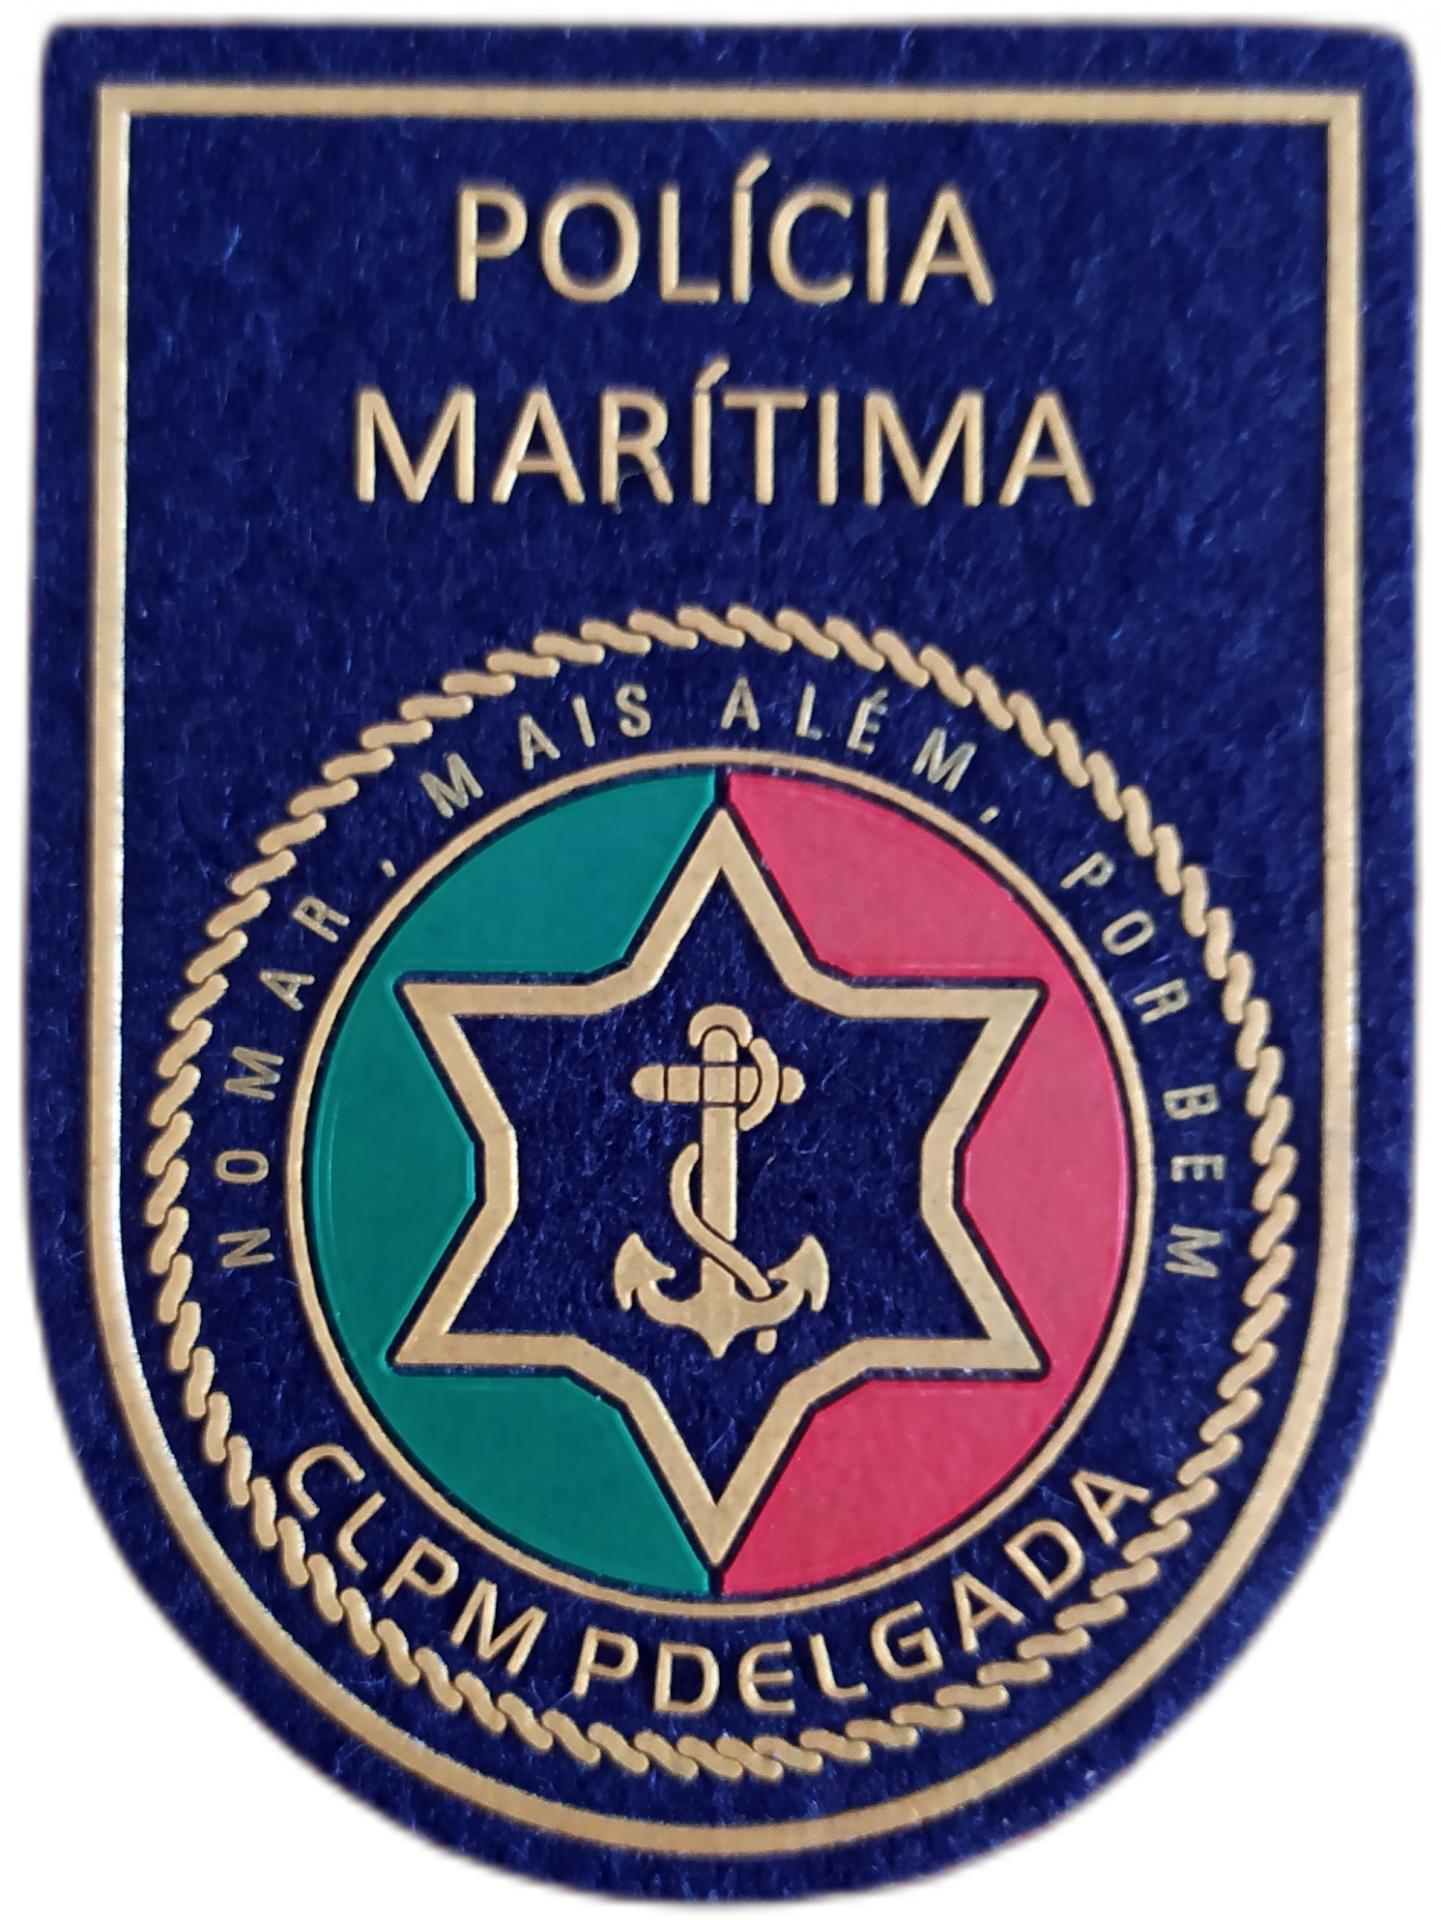 Policía Marítima de Portugal CLPM Ponta Delgada parche insignia emblema distintivo Sea Police